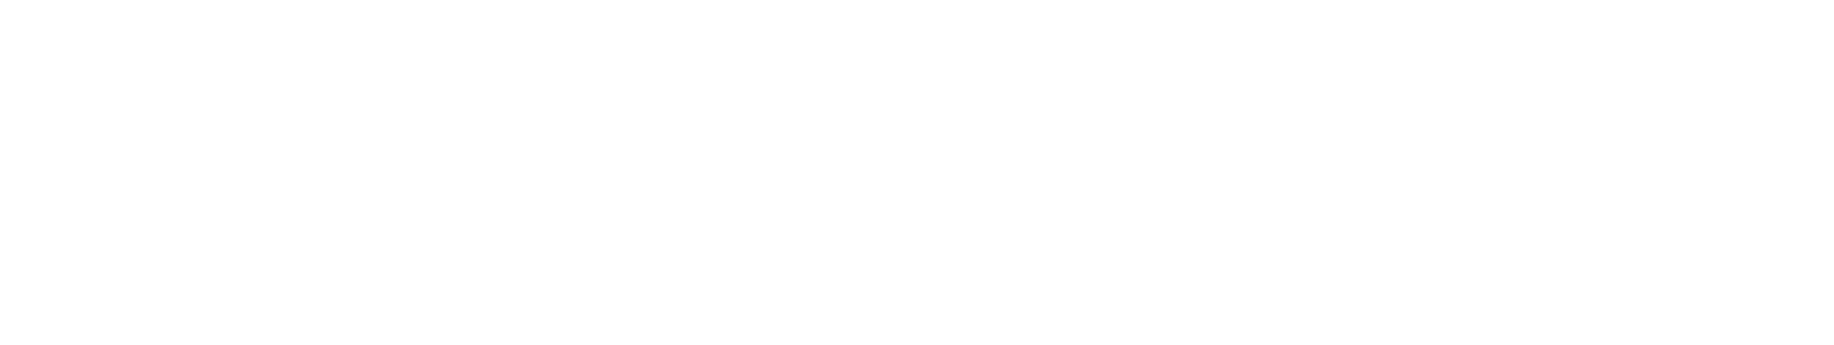 Powered by Big Sky Economic Development